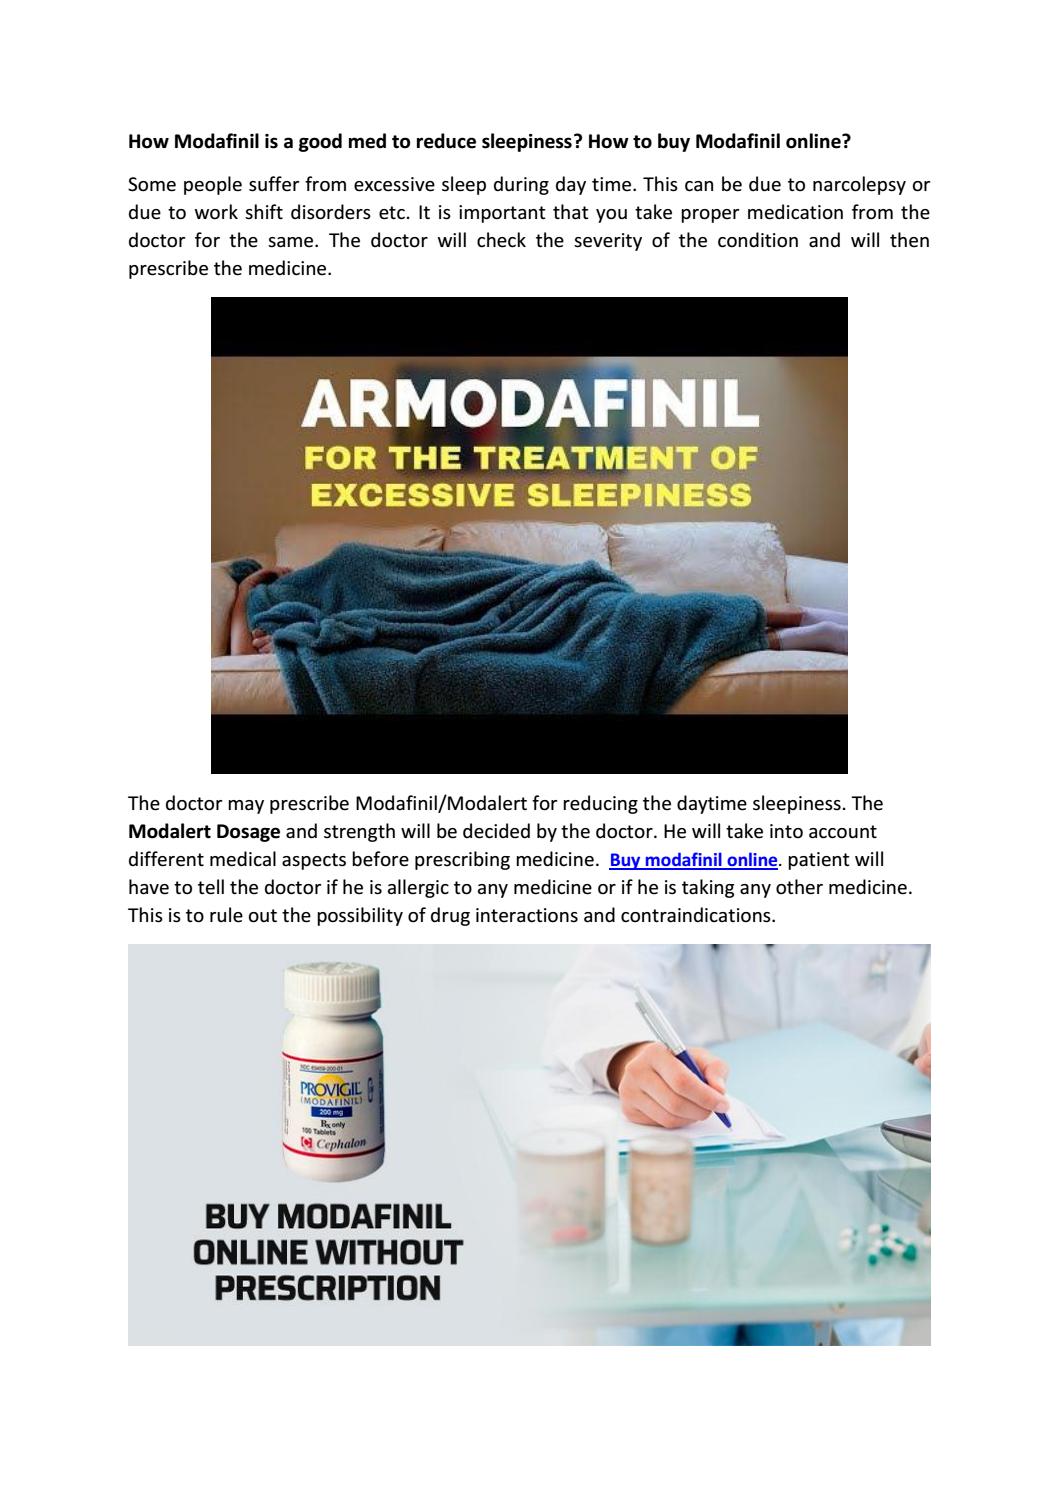 How to buy armodafinil